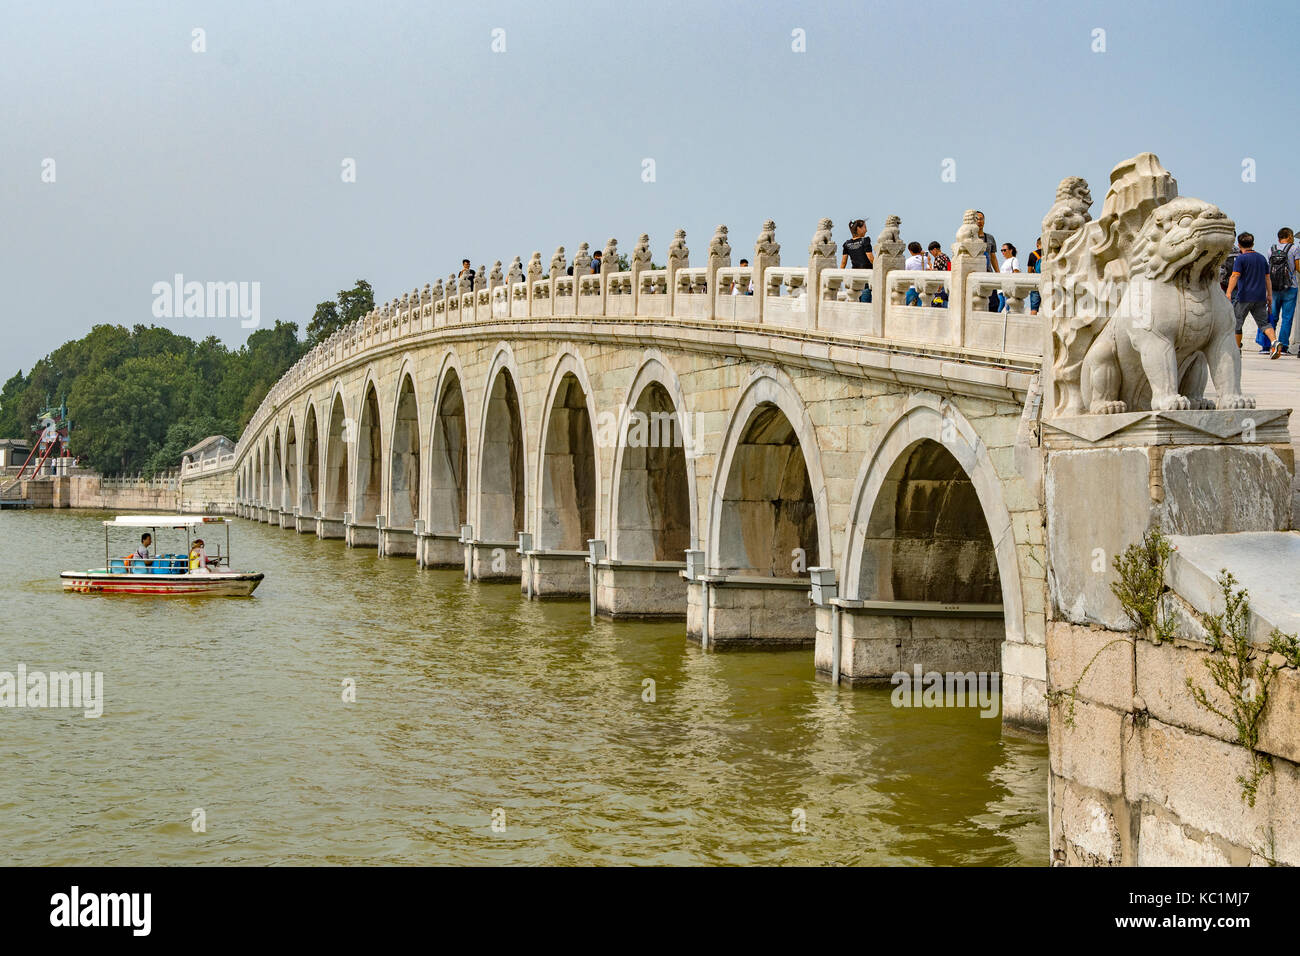 Arch 17 pont sur le Lac de Kunming, Summer palace, Beijing, Chine Banque D'Images